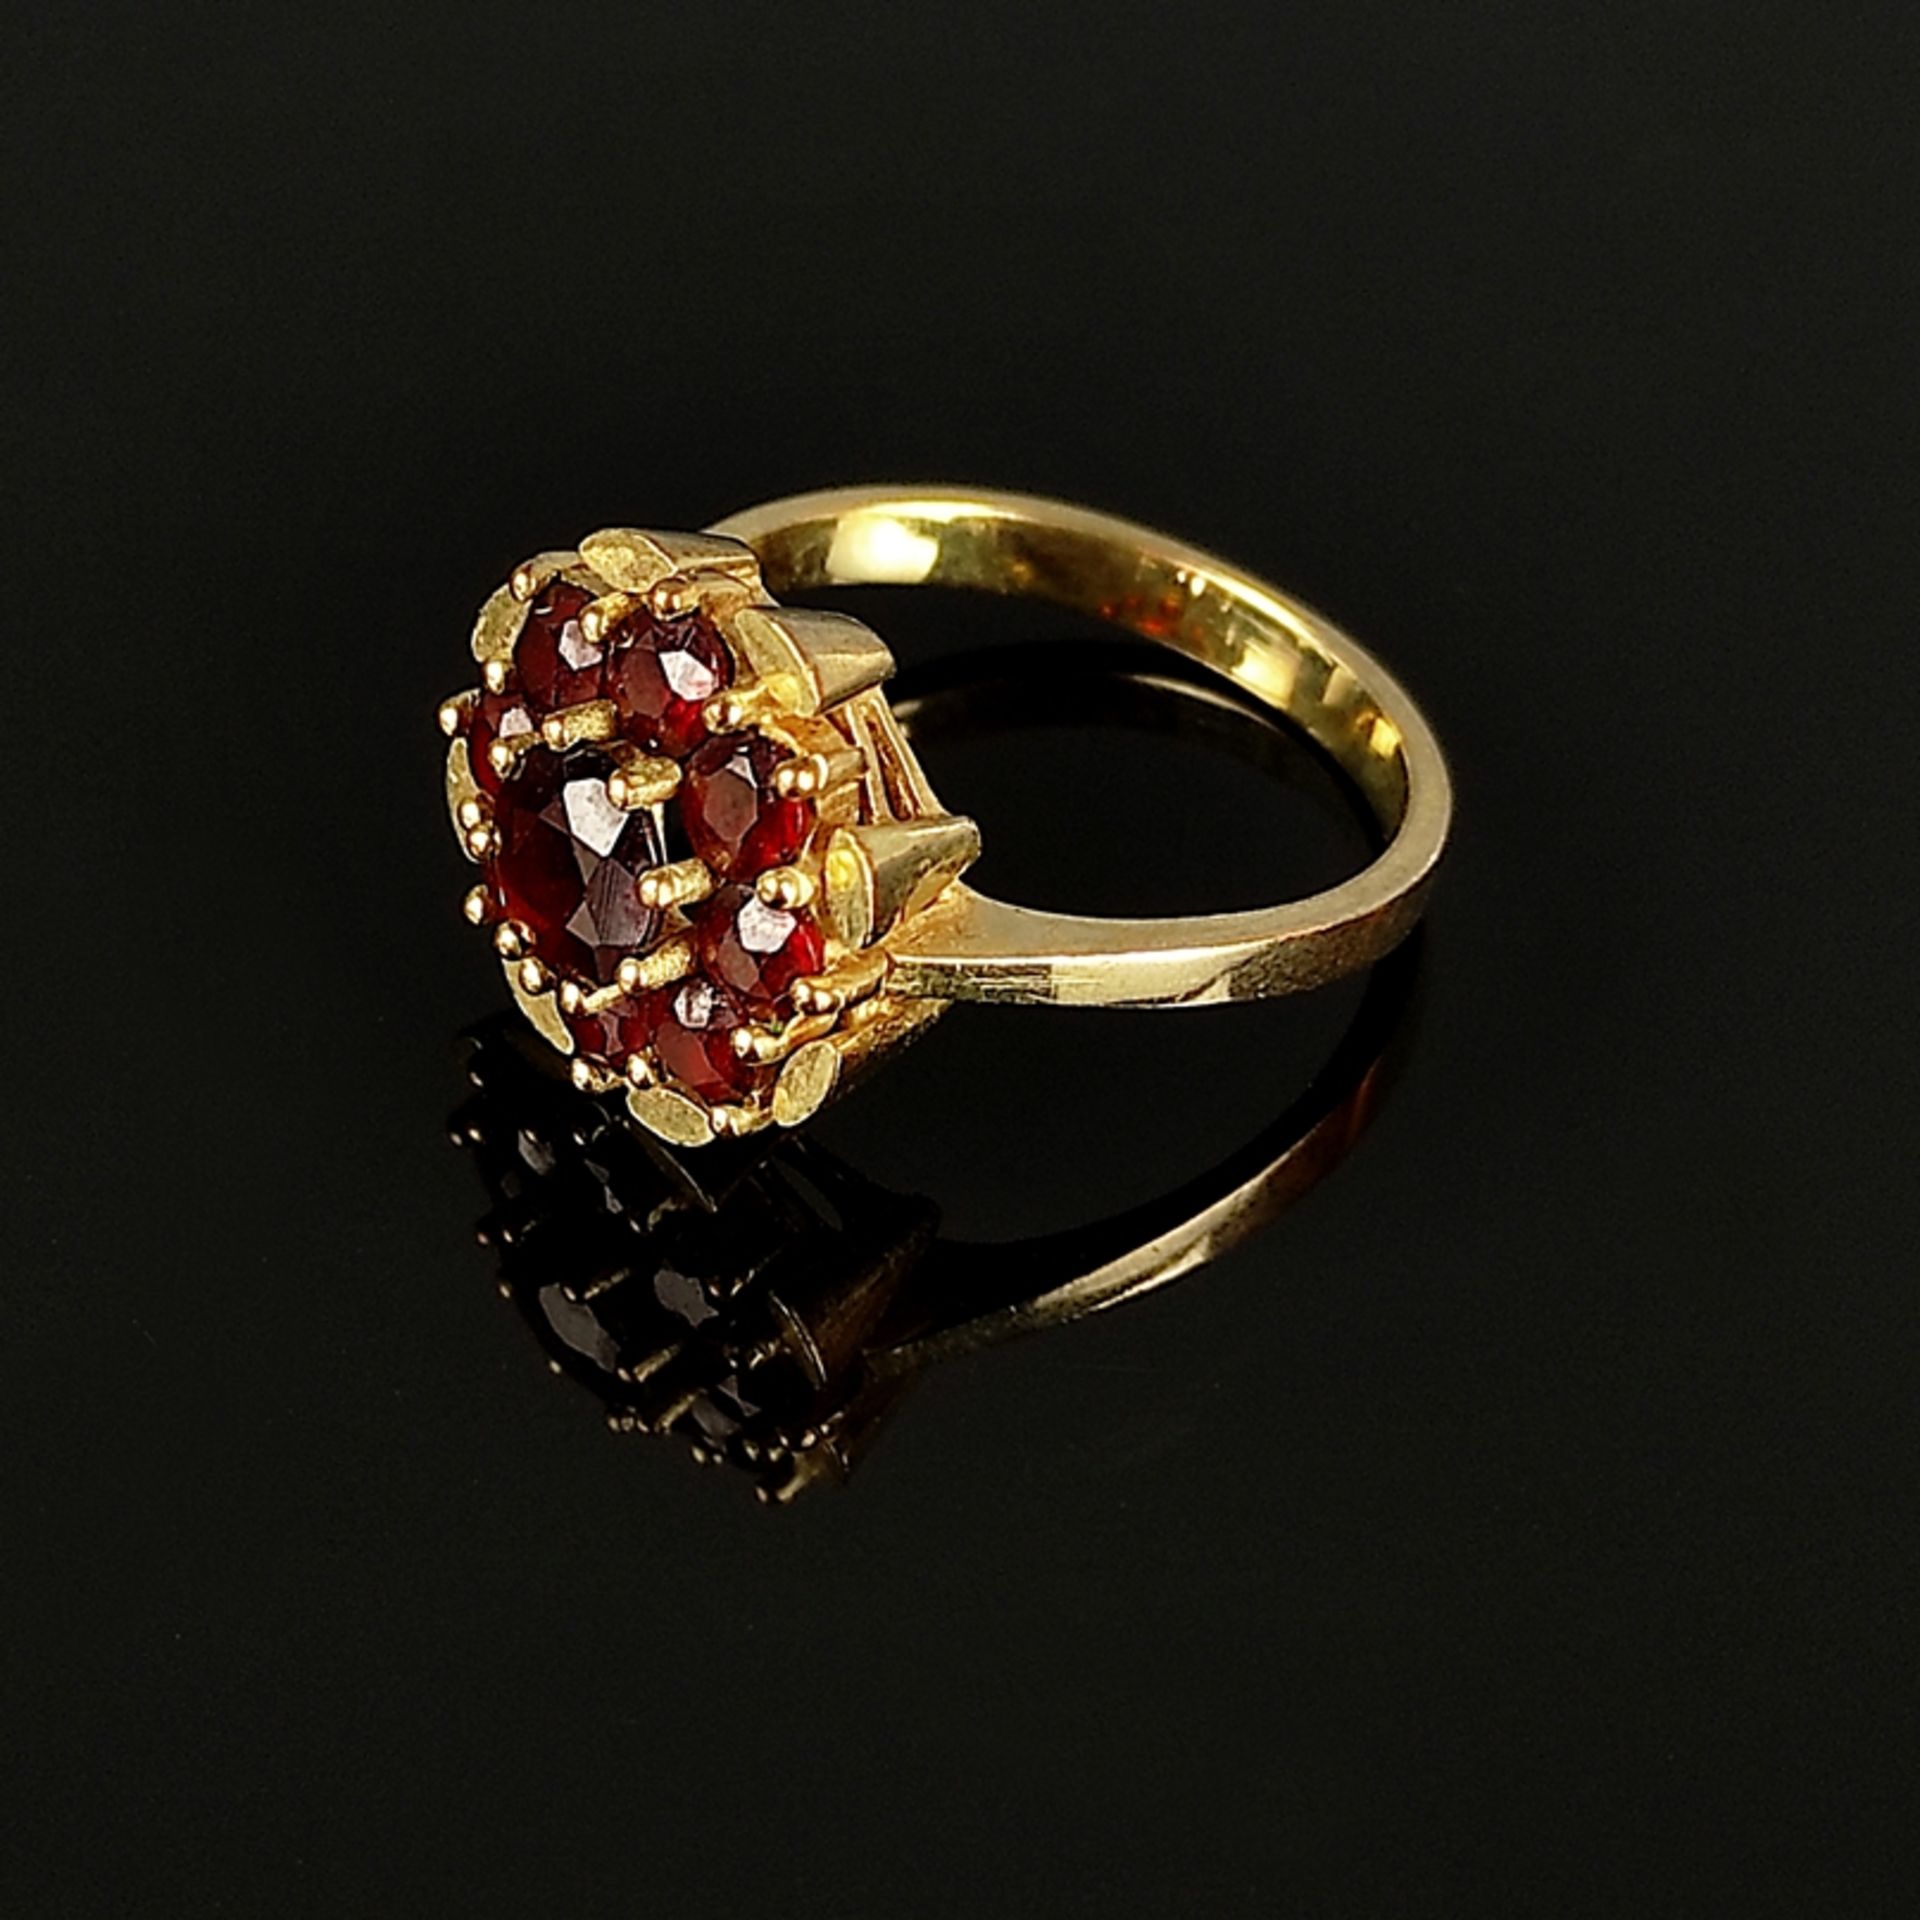 Granat-Ring, 333/8K Gelbgold (punziert), 4,77g, Schauseite als Blume aus neun Granaten gearbeitet, 